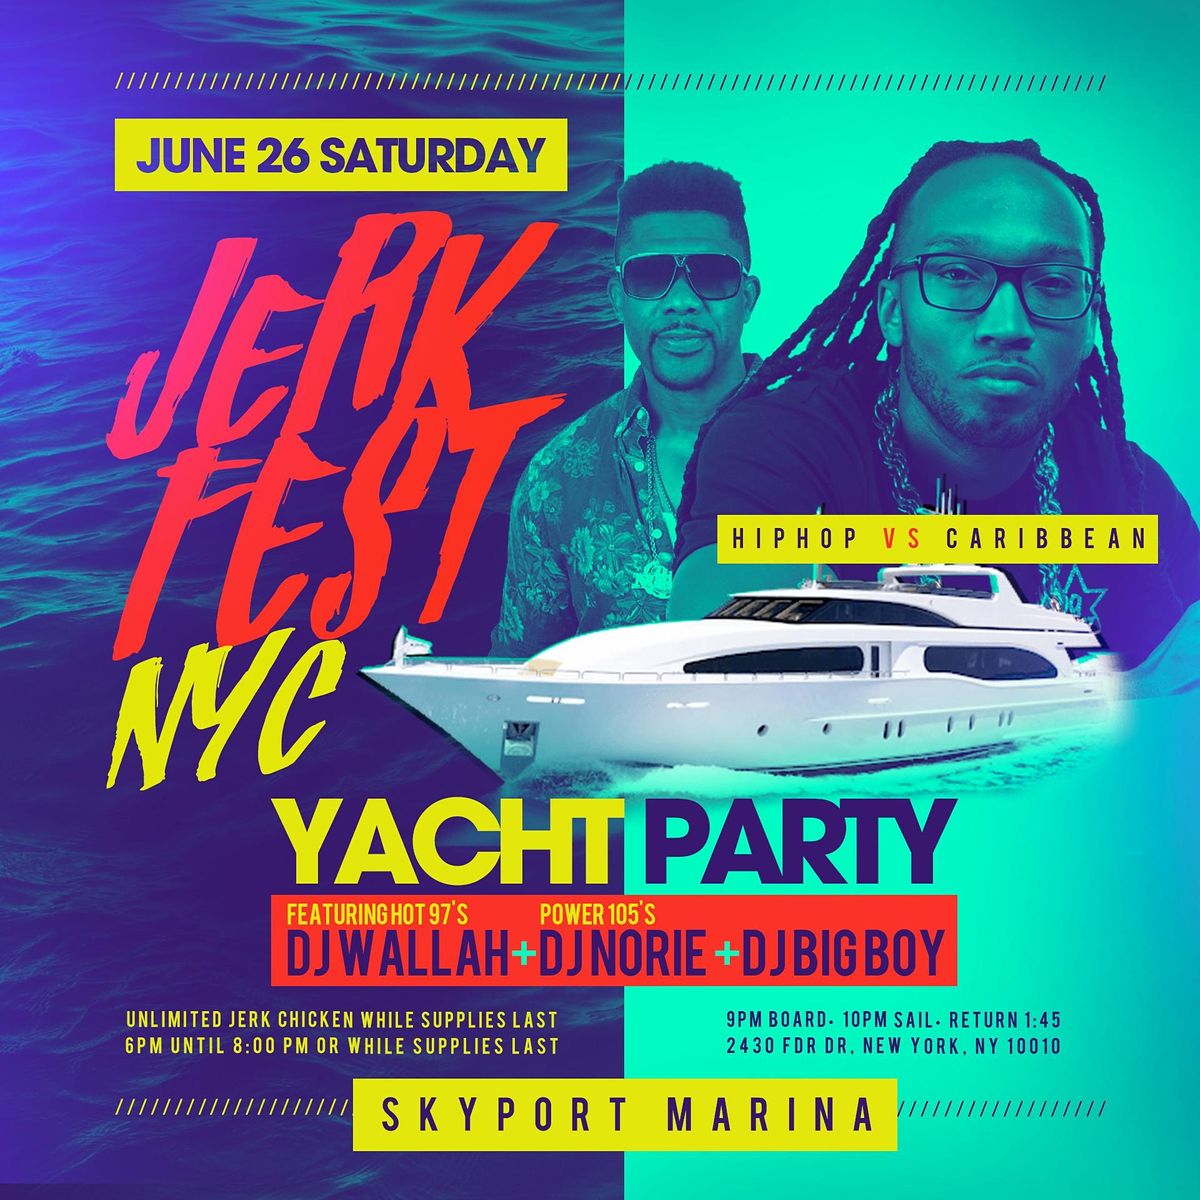 Hot 97.1 Jerk Fest  Yacht Party DJ Wallah & DJ Norie